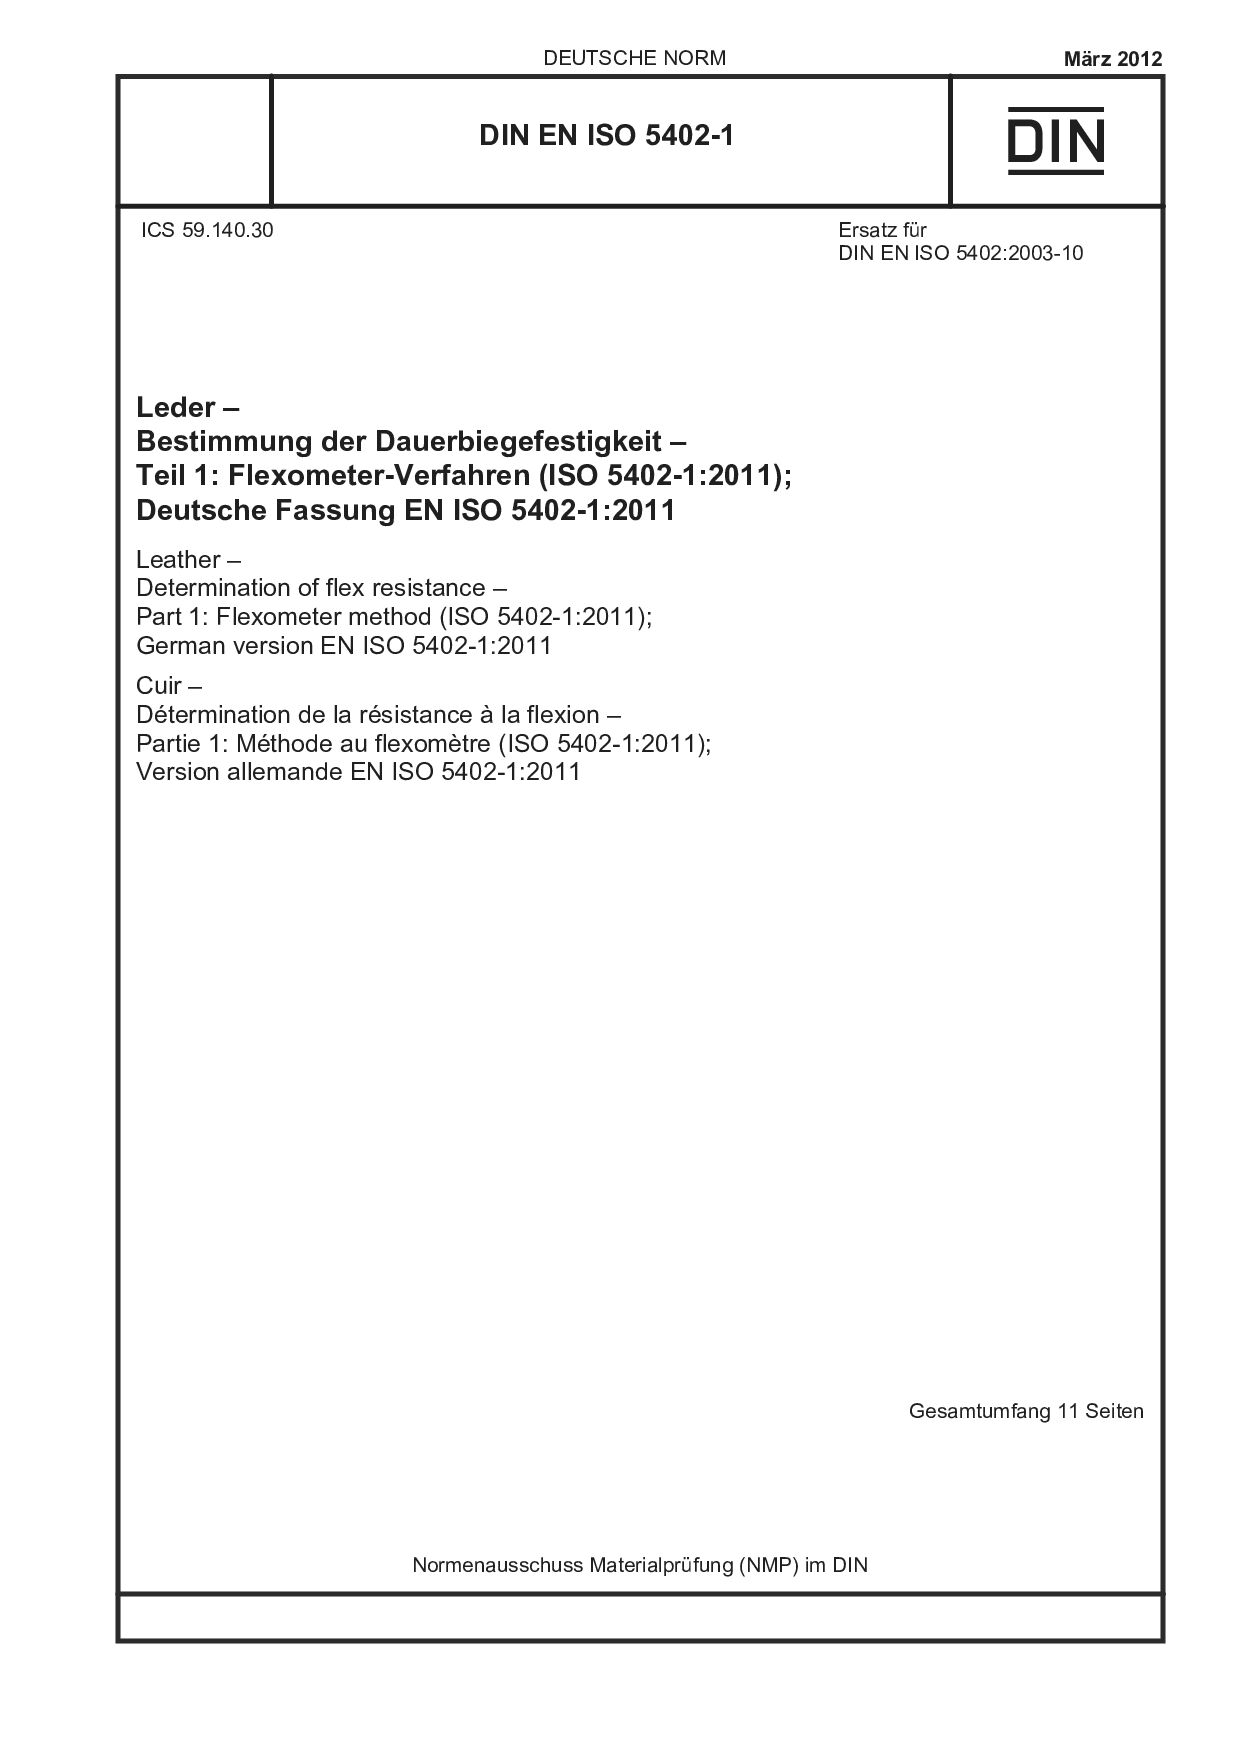 DIN EN ISO 5402-1:2012封面图